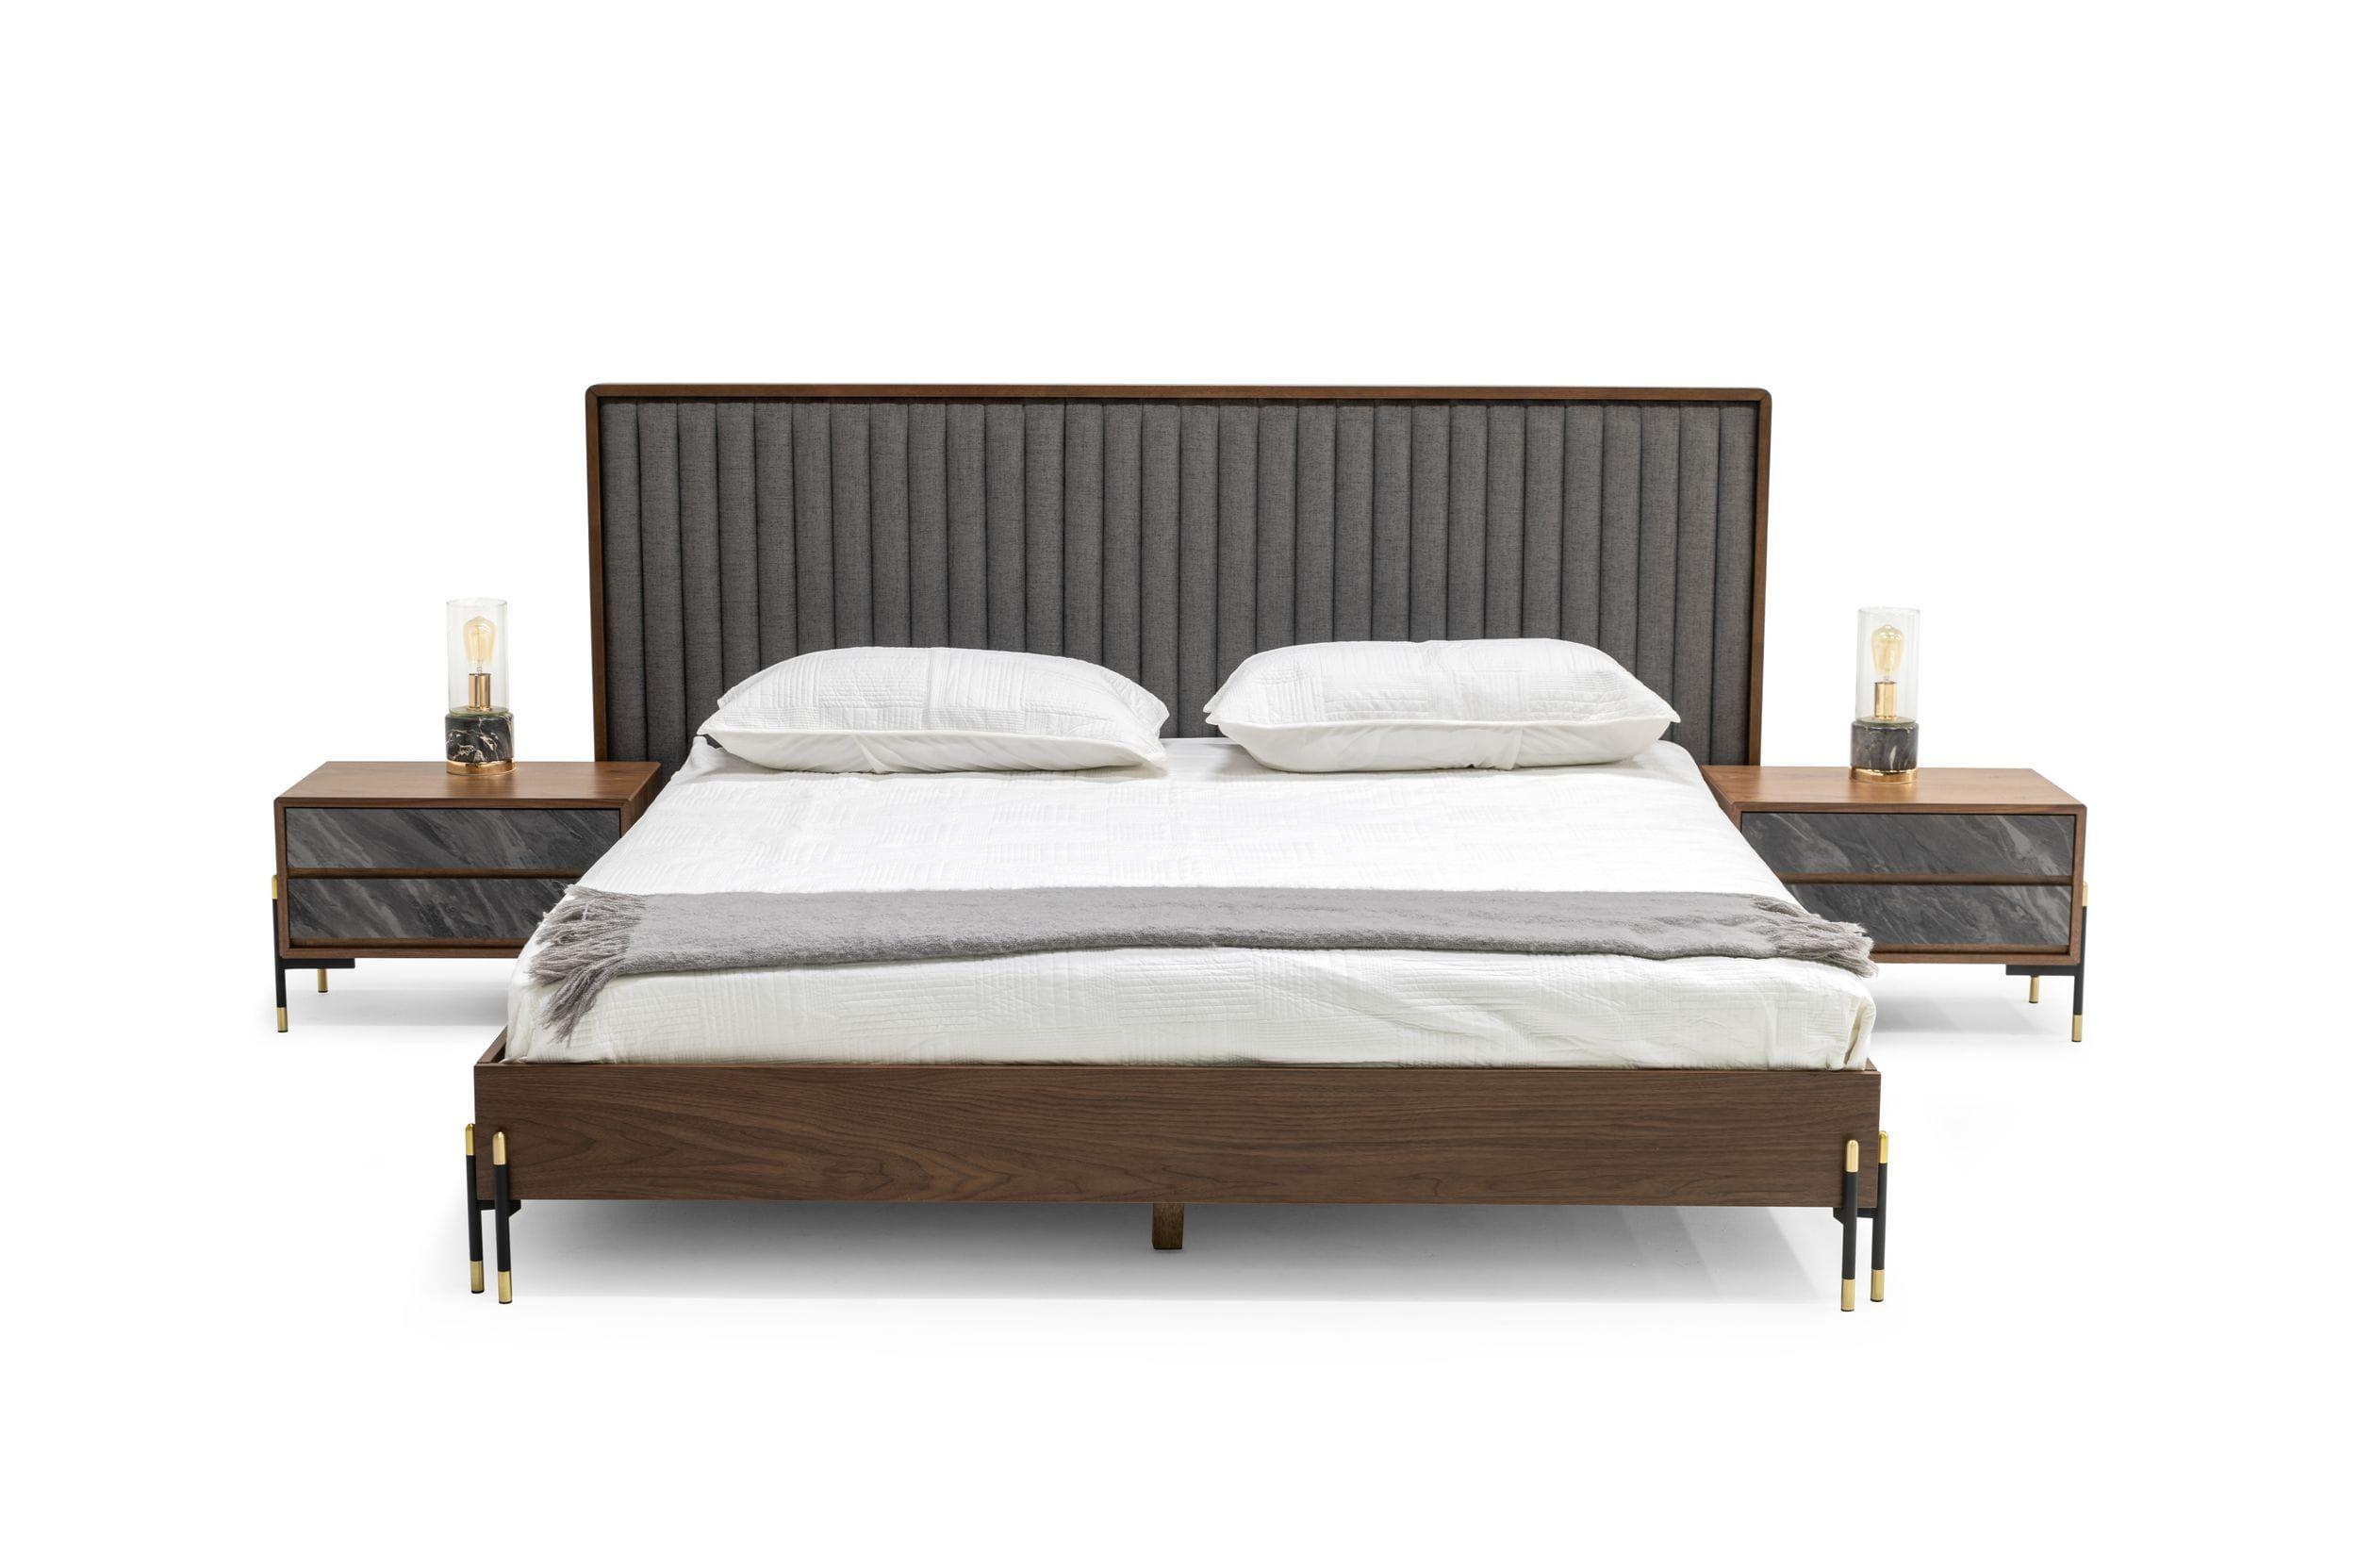 

    
Walnut & Gray Fabric Queen Panel Bedroom Set 5Pcs by VIG Nova Domus Metcalf
